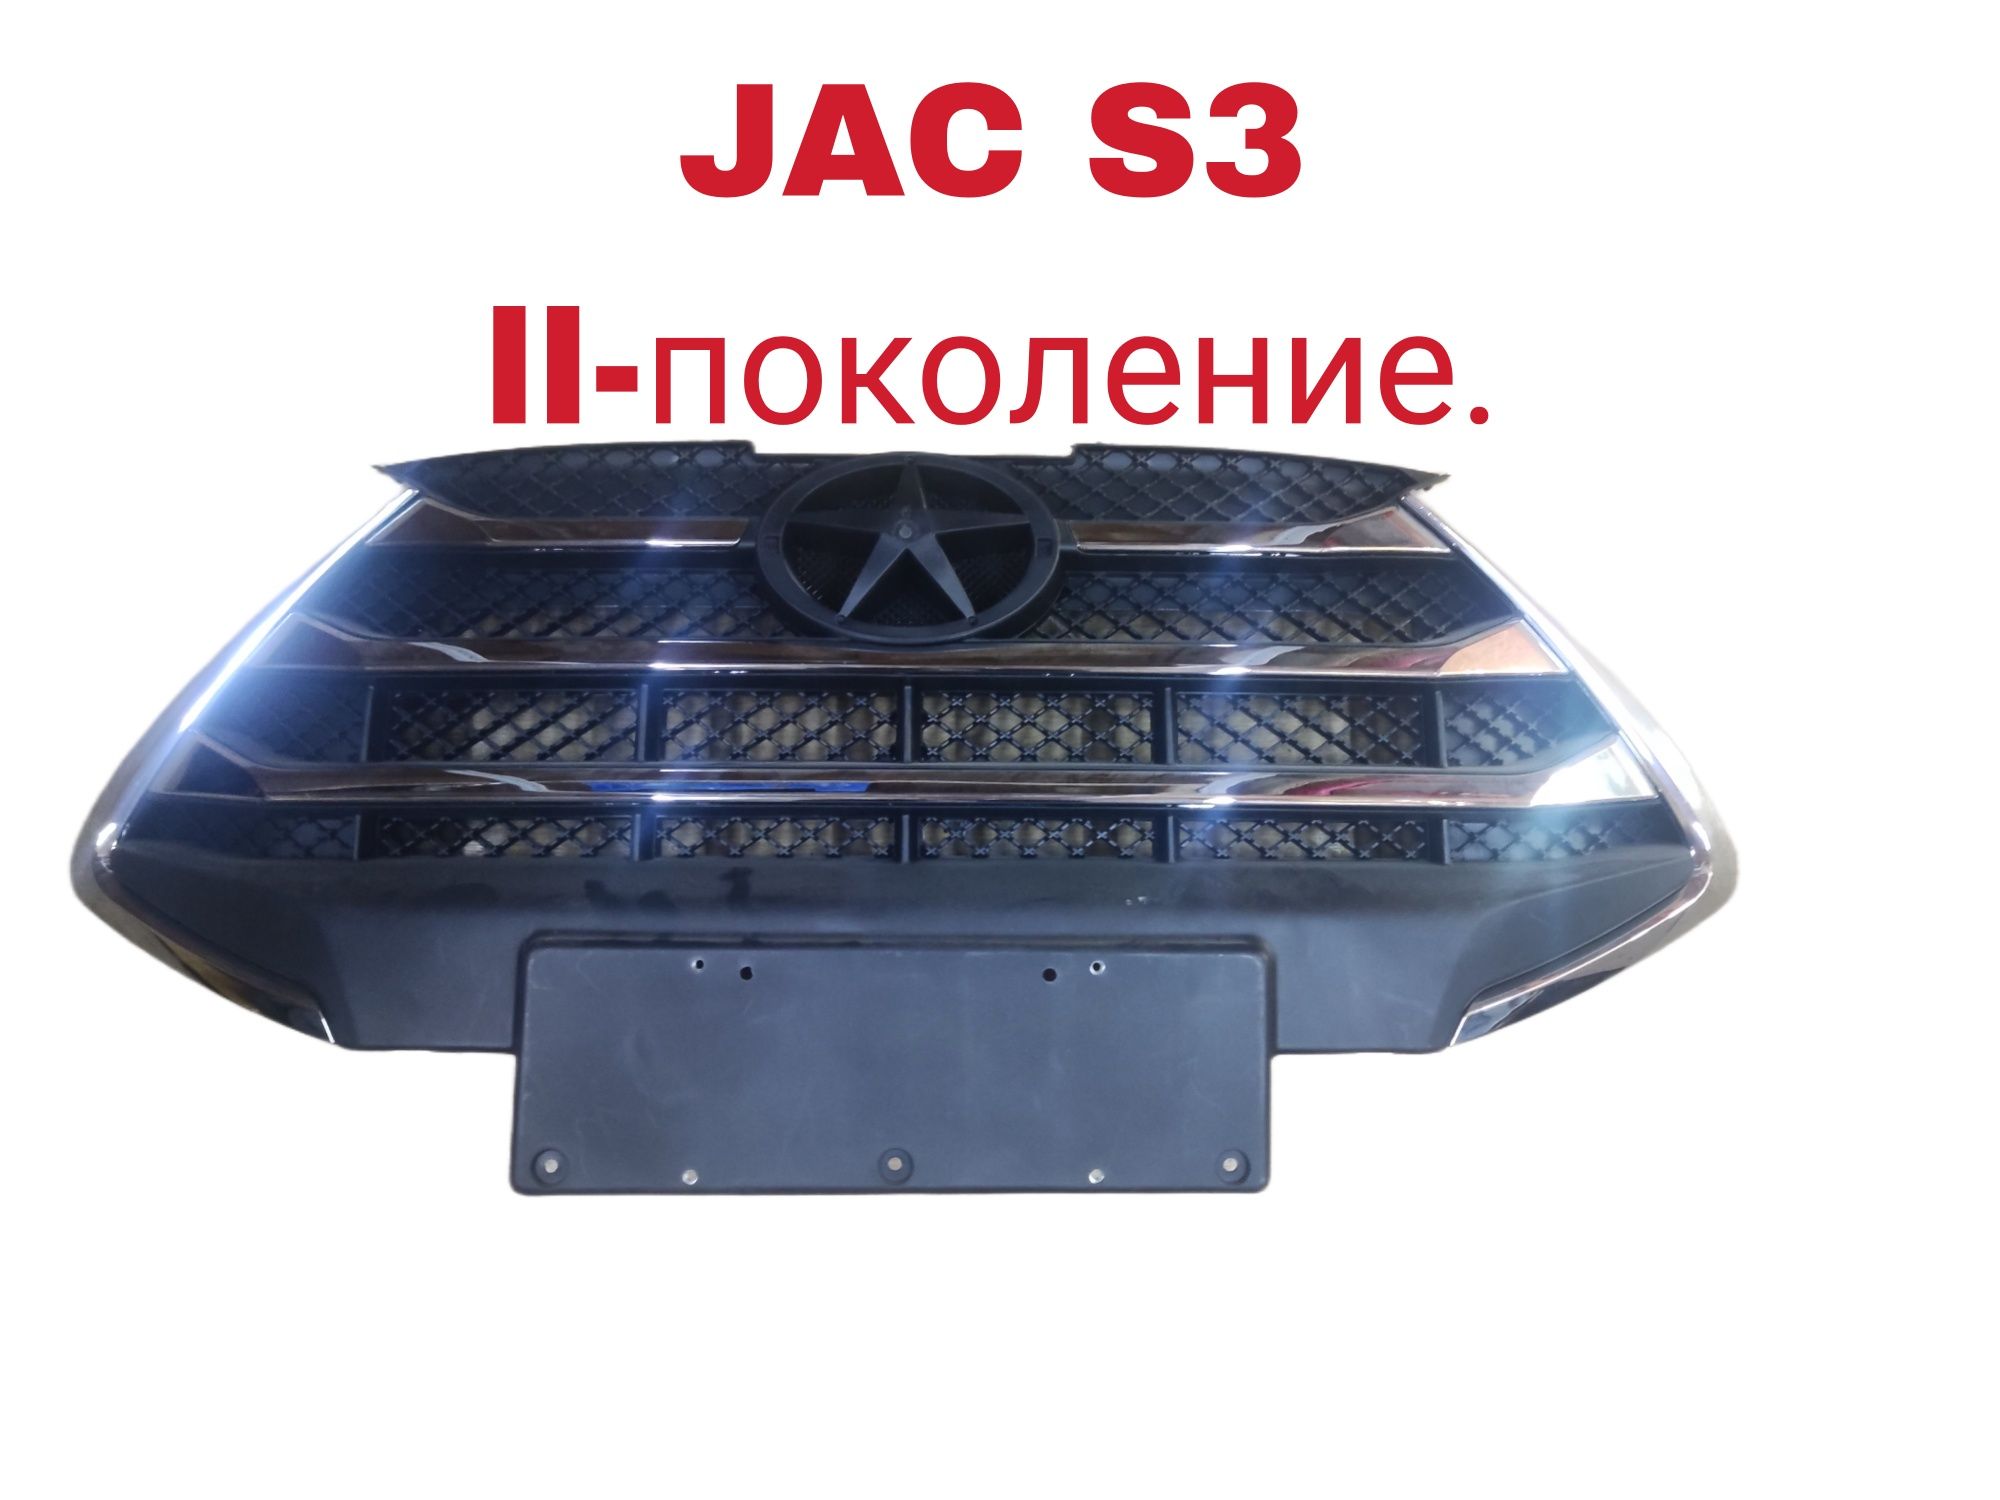 JAC S3 решетка радиатора.